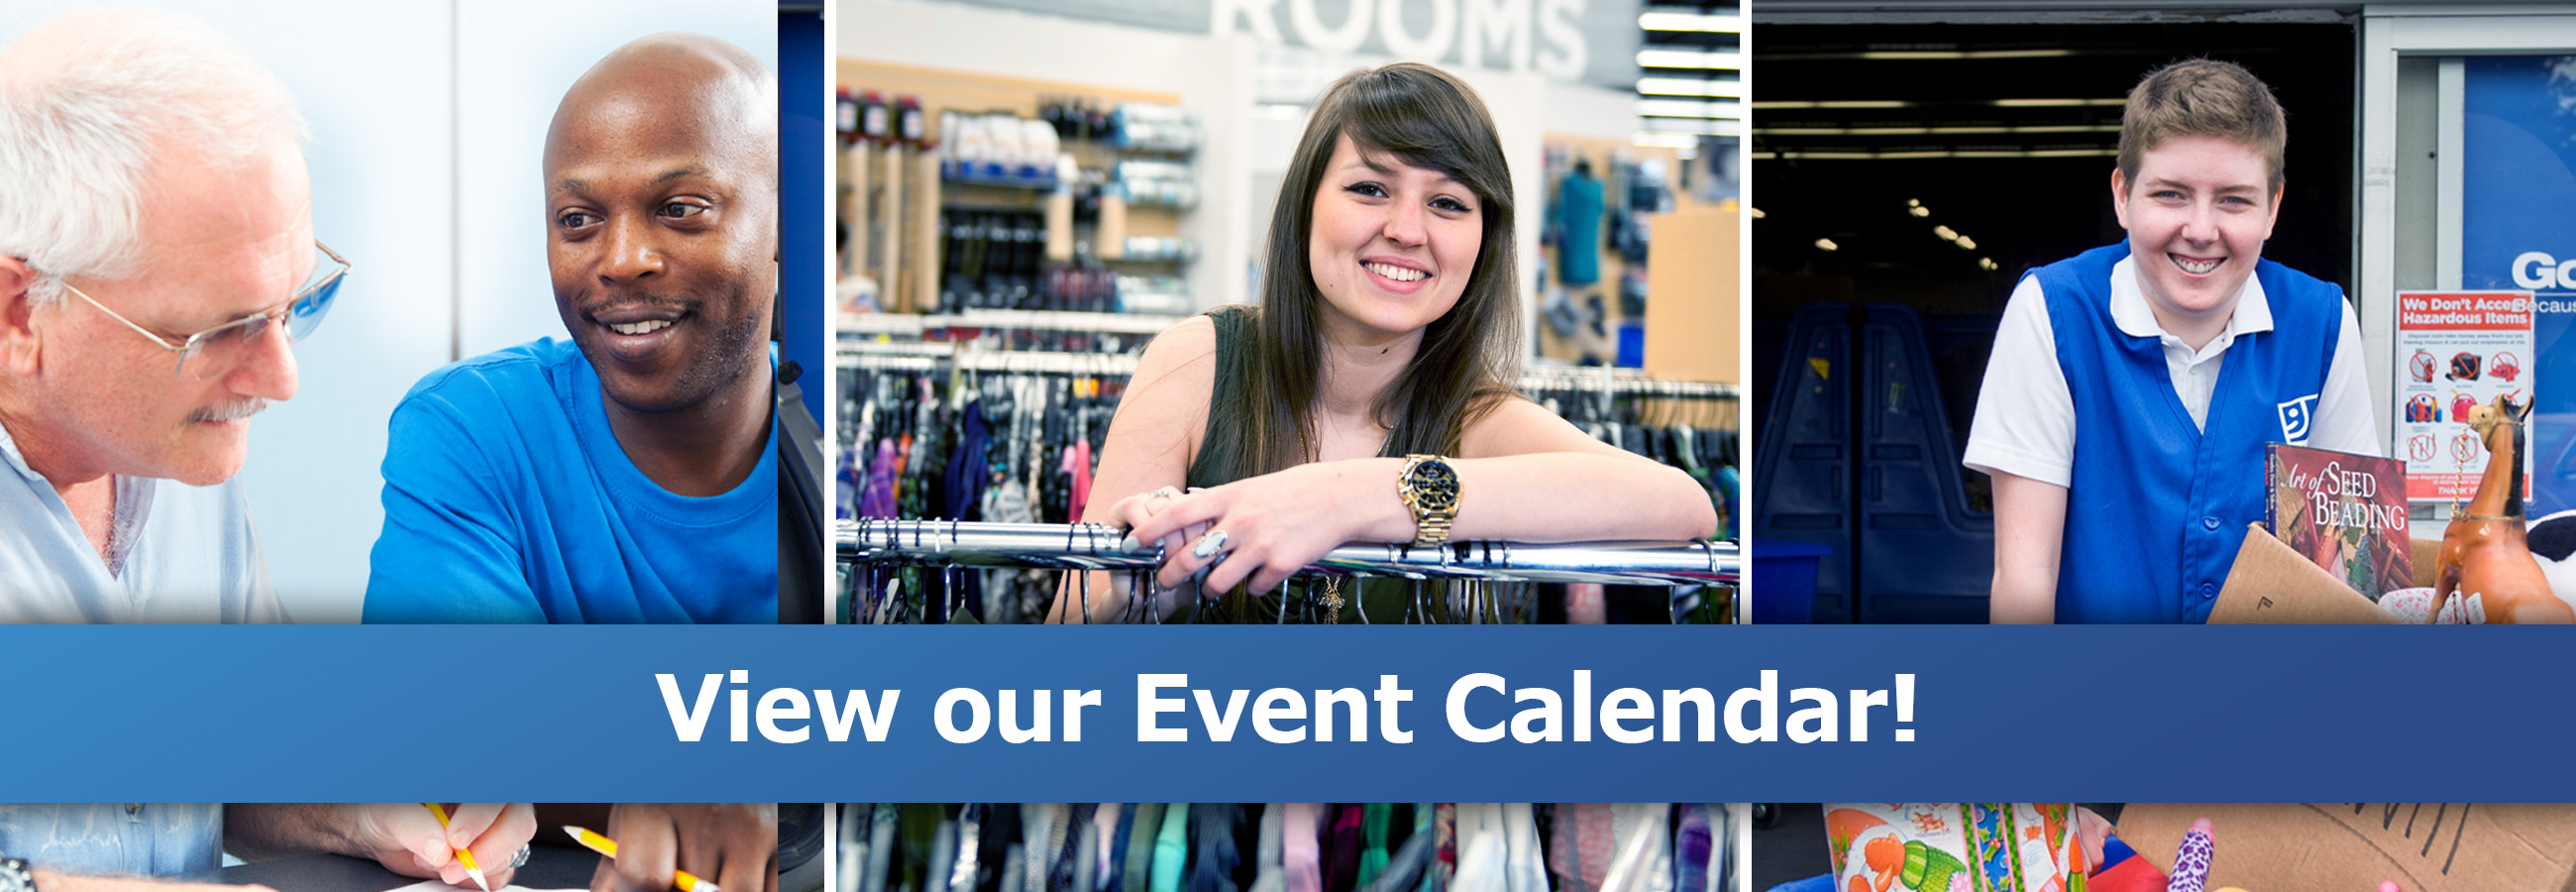 View our Event Calendar.